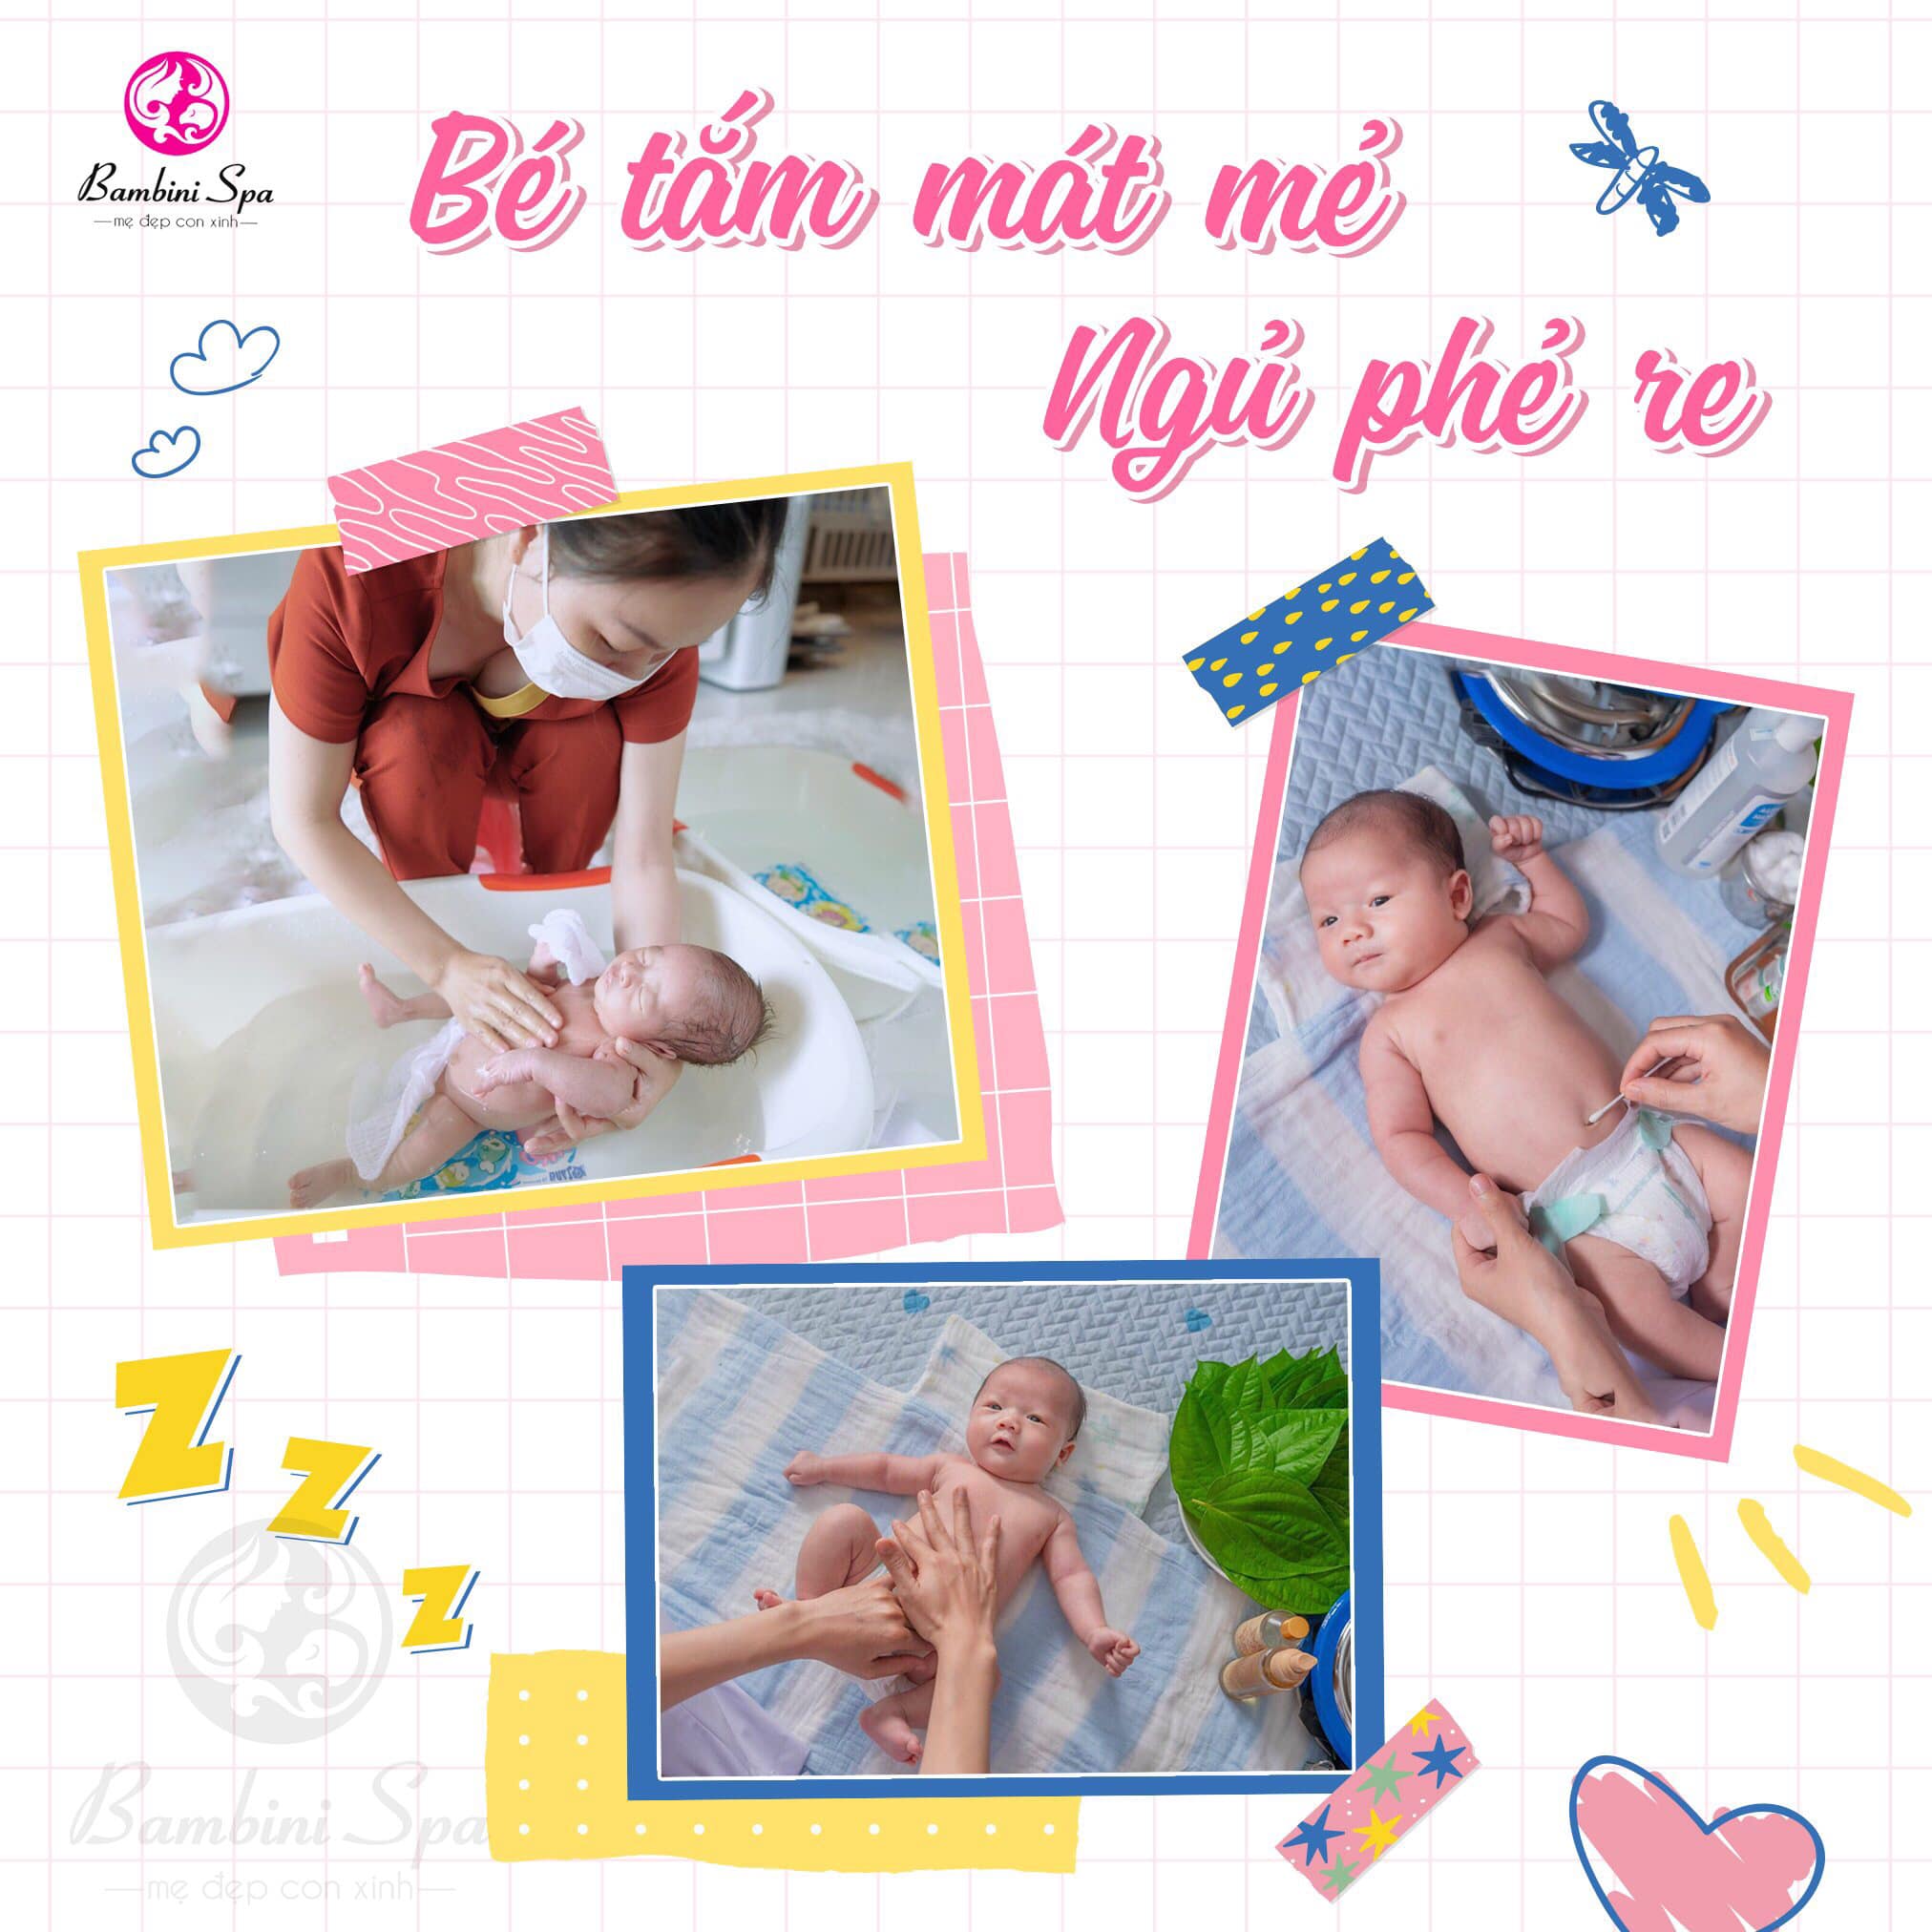 Bambini spa - Chăm sóc mẹ và bé ảnh 2